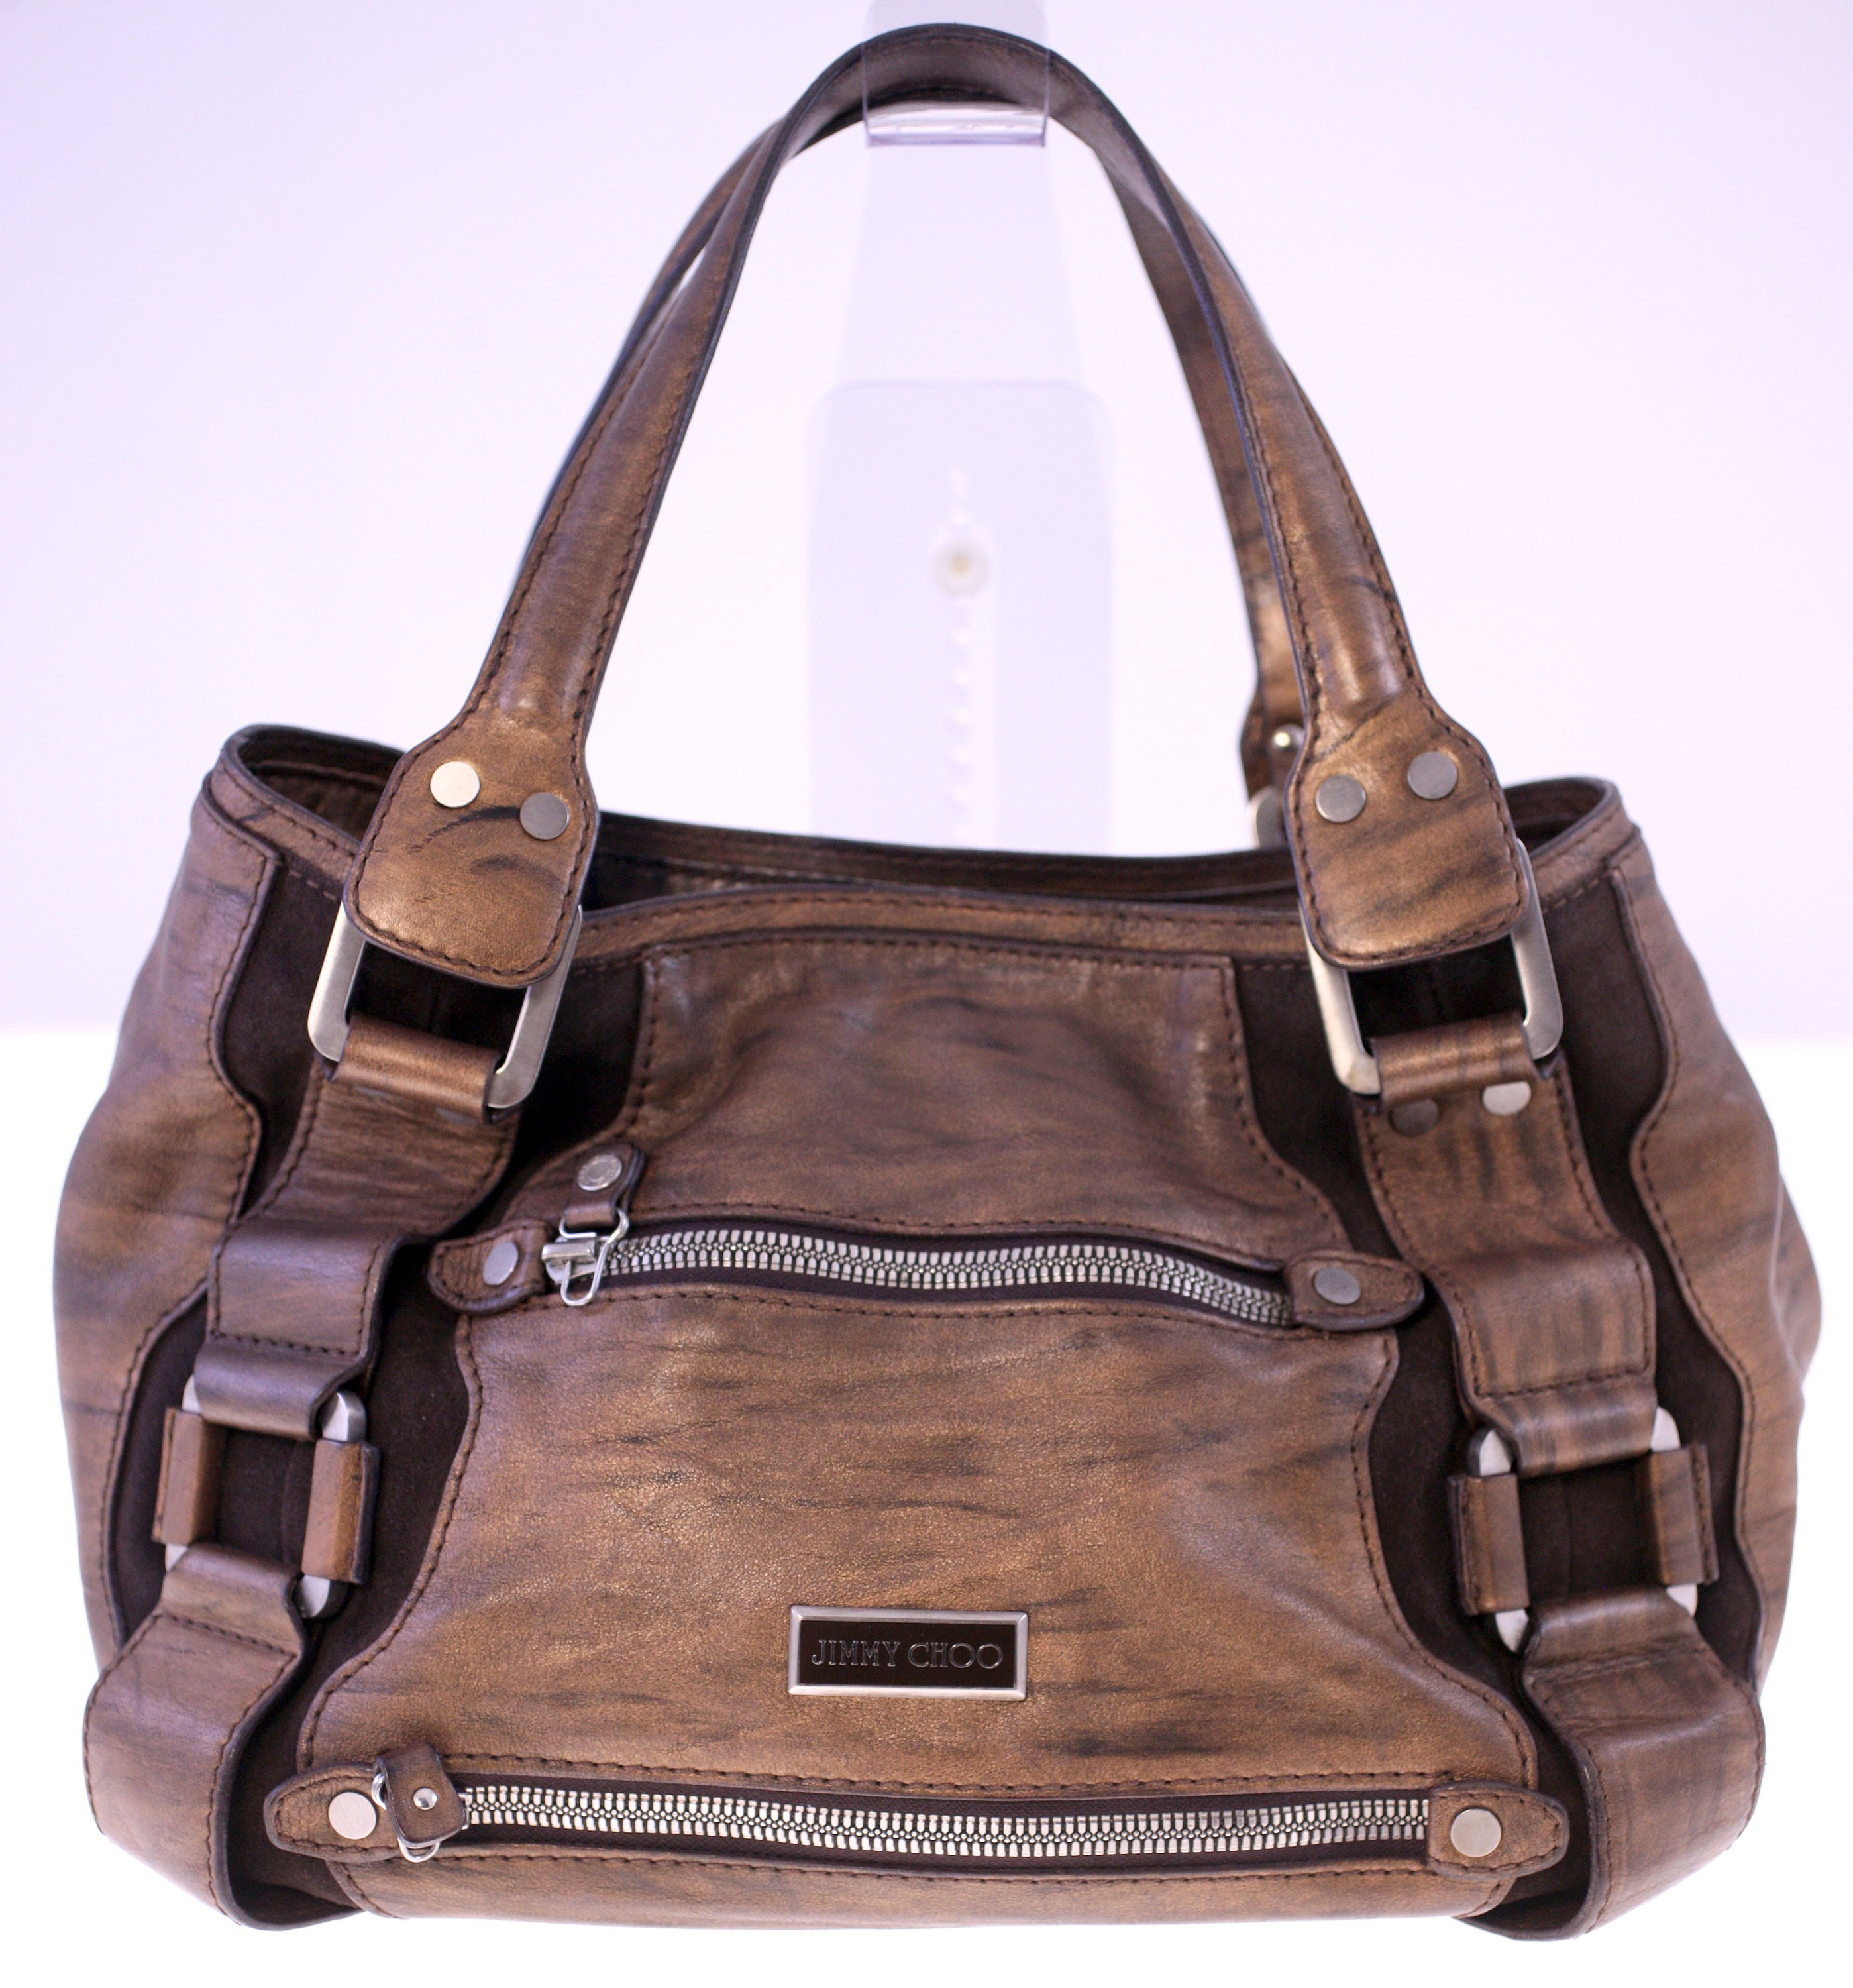 Jimmy choo purse - Women's handbags